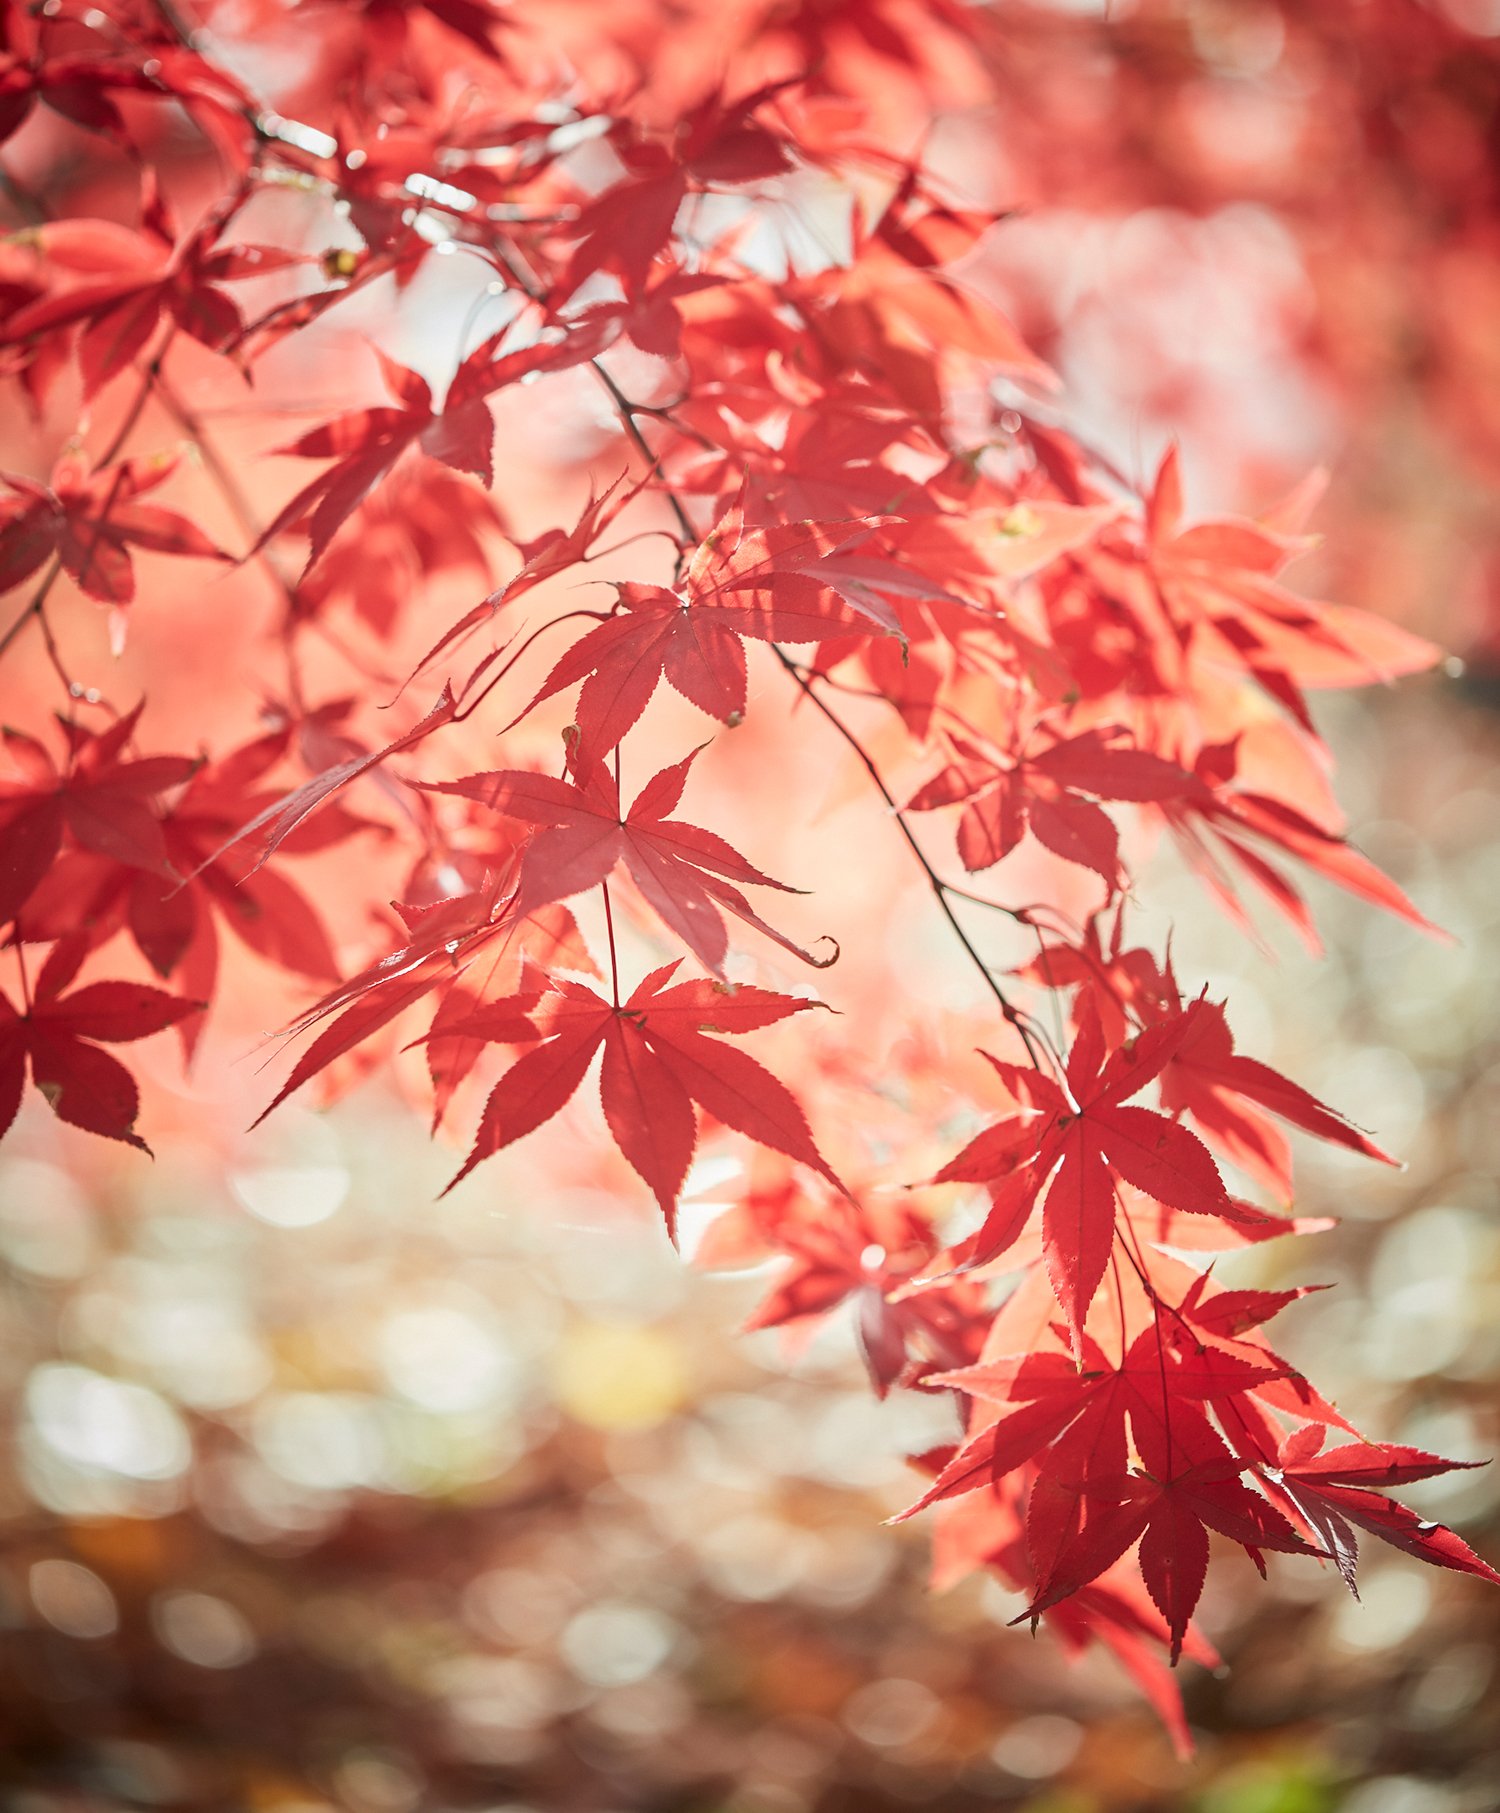 Japanese Maples photographed by Ngoc Minh Ngo